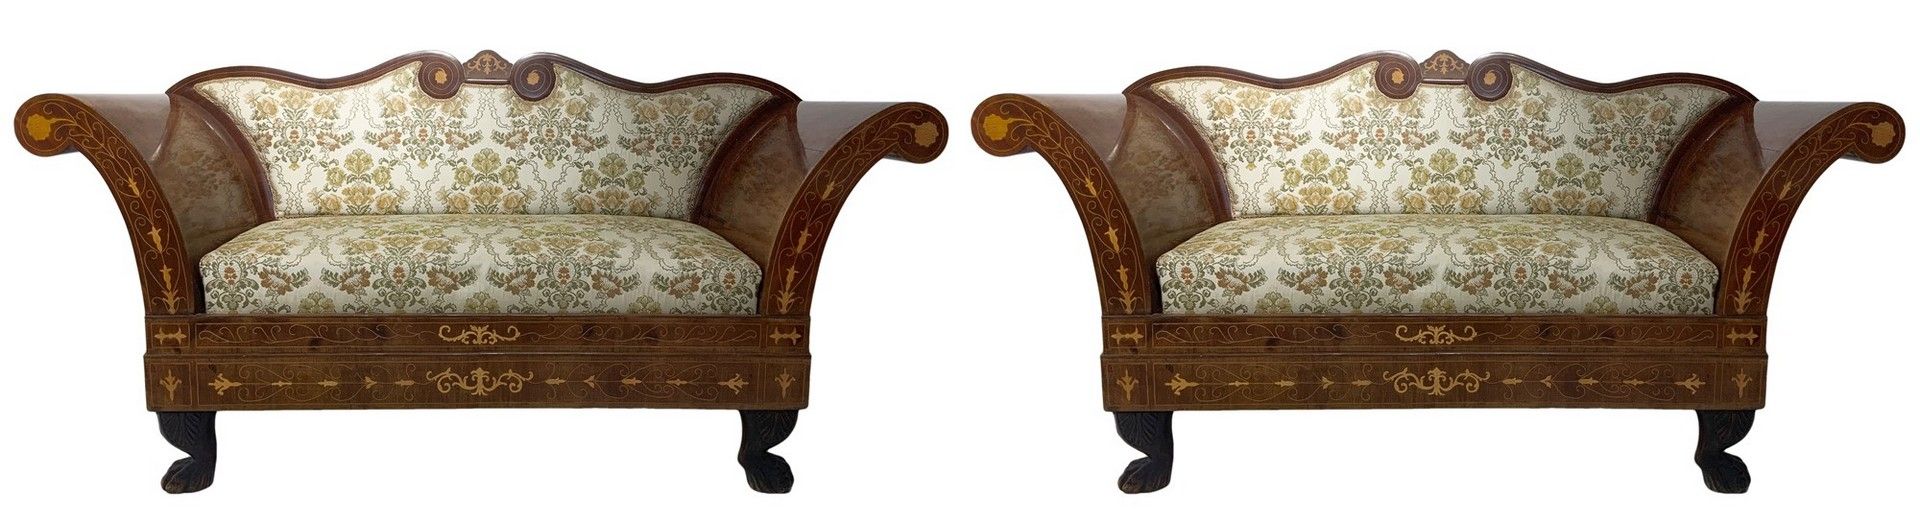 Null 一对带镶嵌物的双座沙发，18世纪。 高90厘米。长172厘米。盒式扶手，实心铁脚，带叶子装饰。西西里岛的橱柜制造产品。查理十世。可拆卸的座椅。状况非常&hellip;